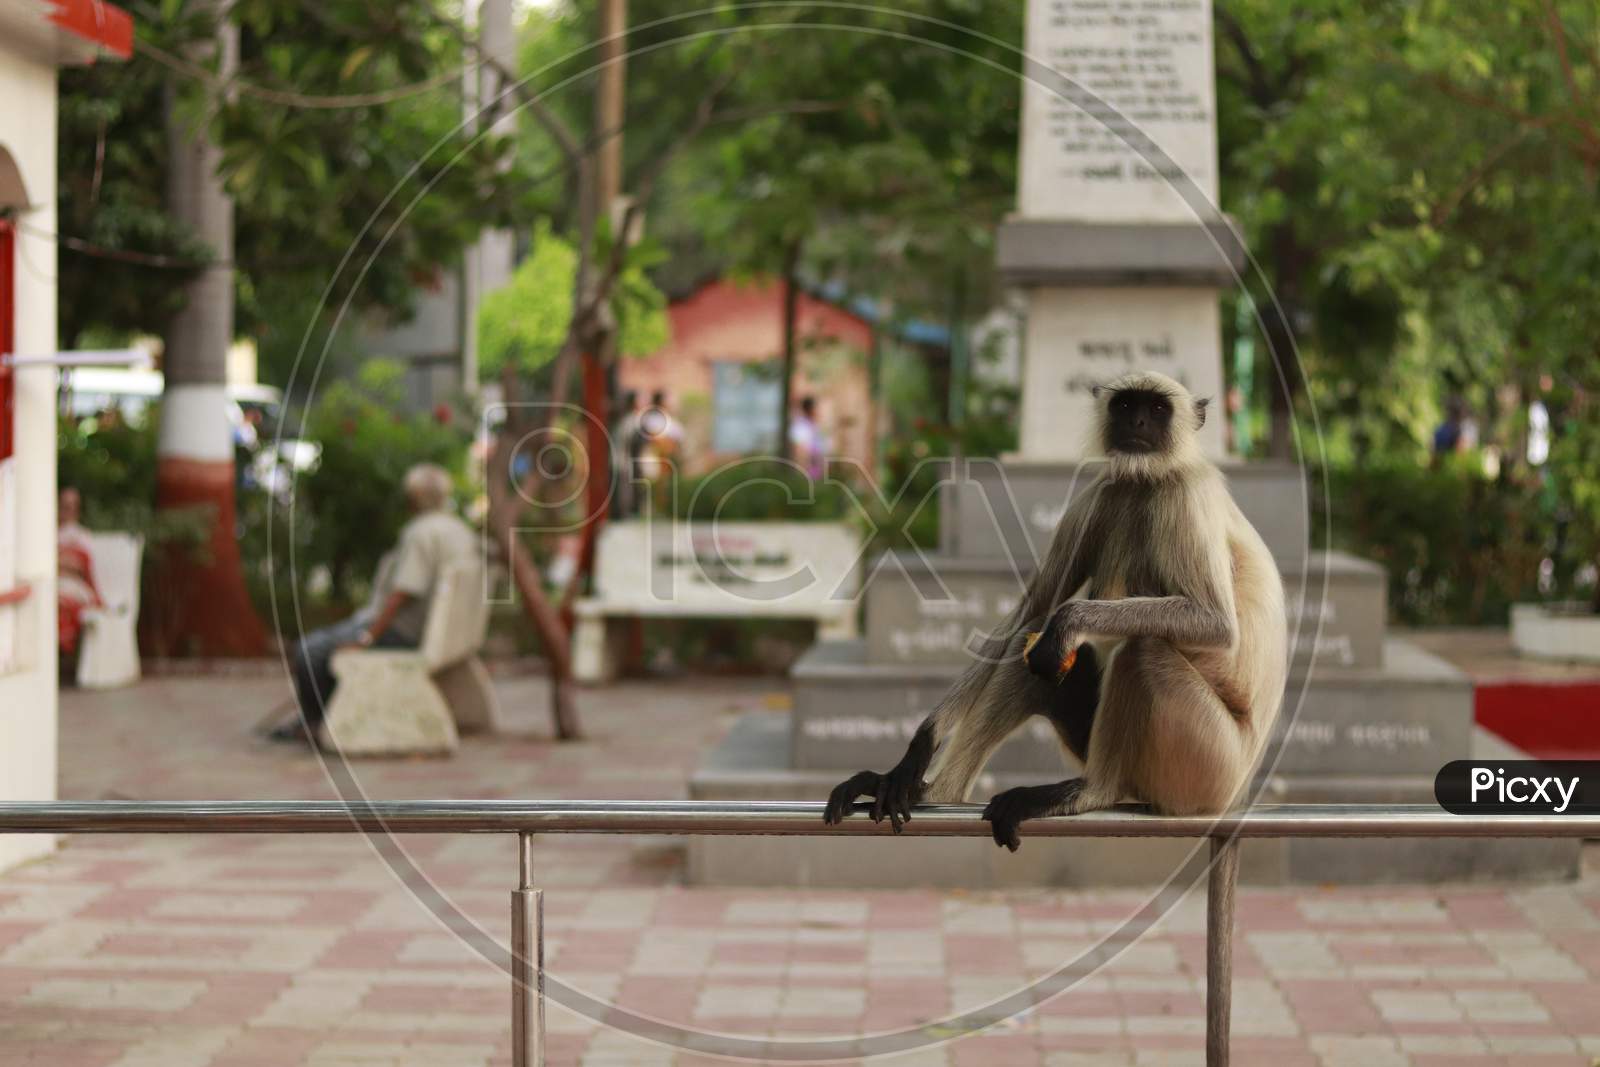 Indian Monkey sitting